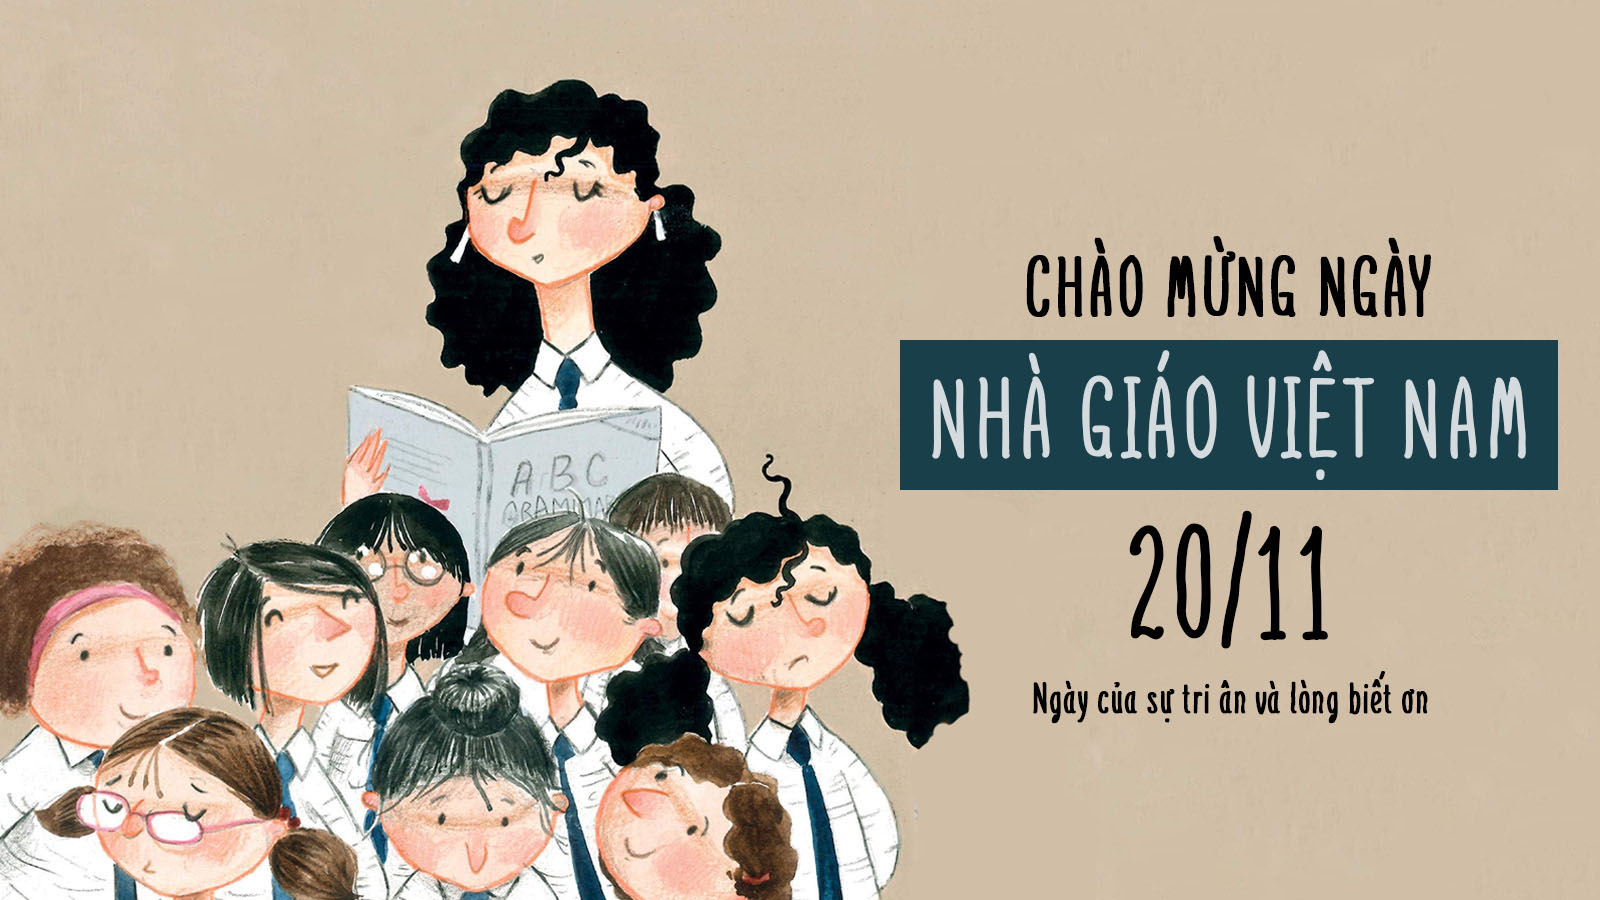 Top những mẫu thiết kế nội thất trường học bắt mắt chào đón ngày lễ Nhà giáo Việt Nam